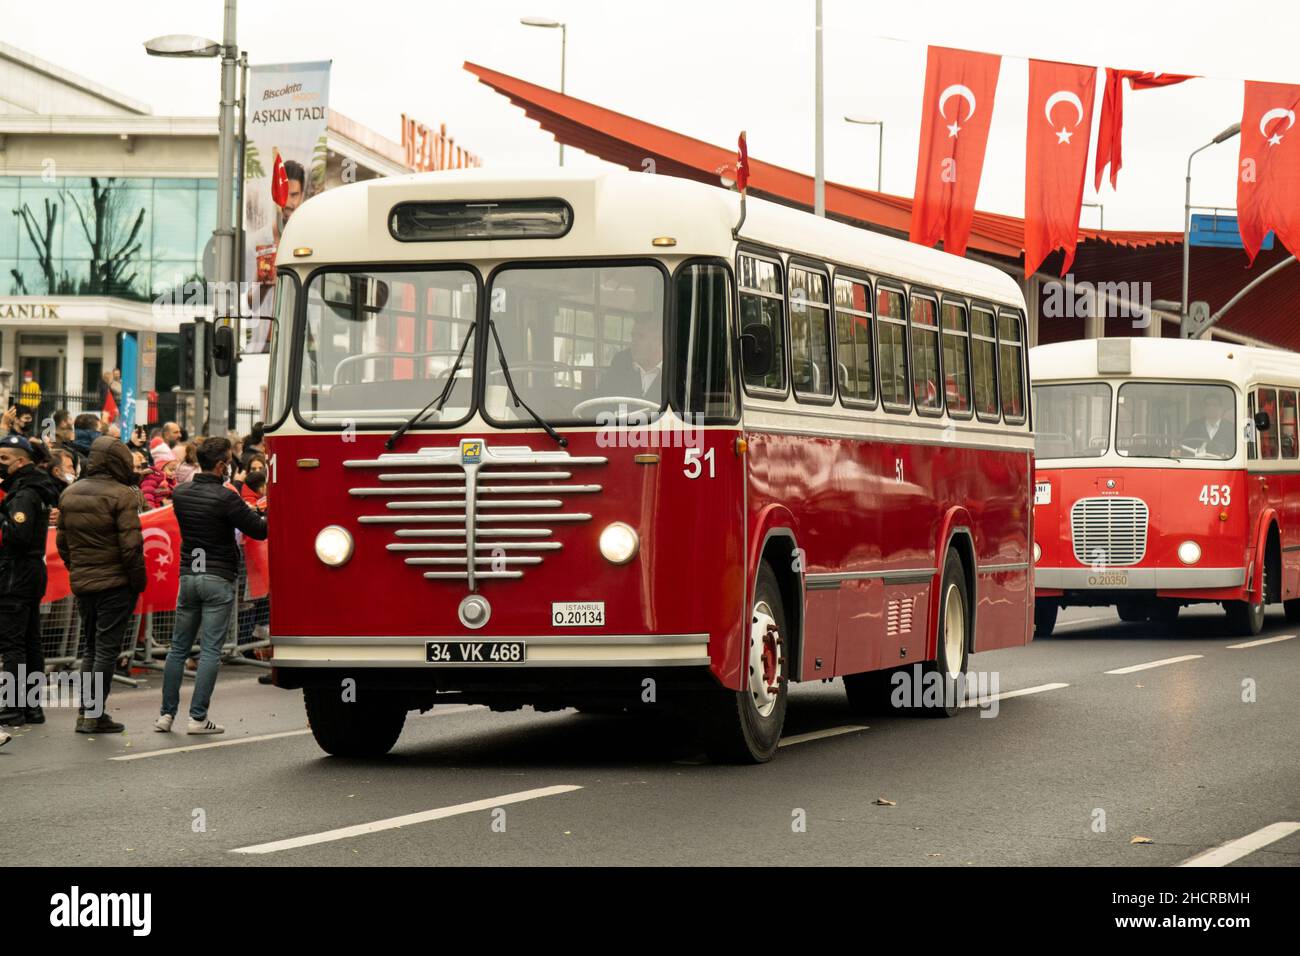 Istanbul, Turquie - 29 octobre 2021: Vue latérale d'un bus passanger d'époque AVEC bus 5500 tu.10 produit en 1951 à l'occasion des célébrations du jour de la république de Tur Banque D'Images